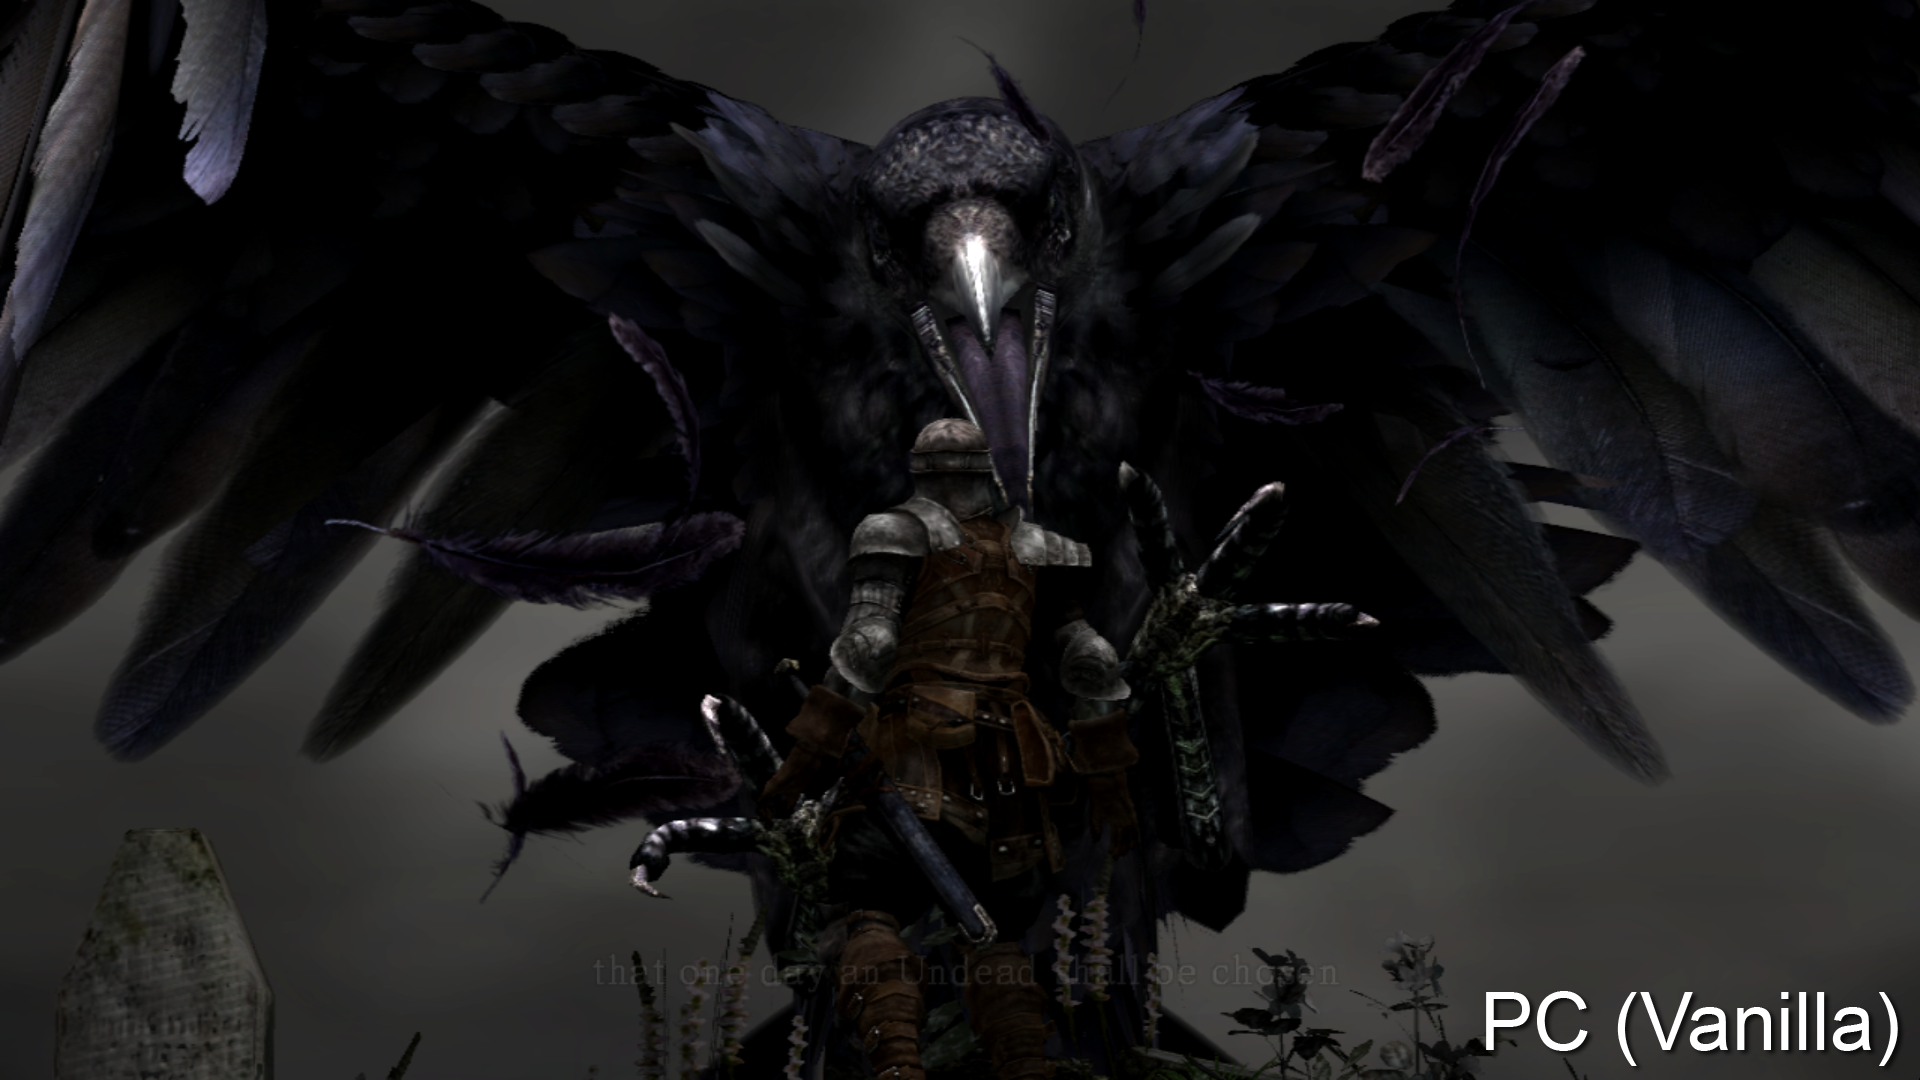 fond d'écran dark souls 1080p,démon,oeuvre de cg,personnage fictif,ténèbres,dragon